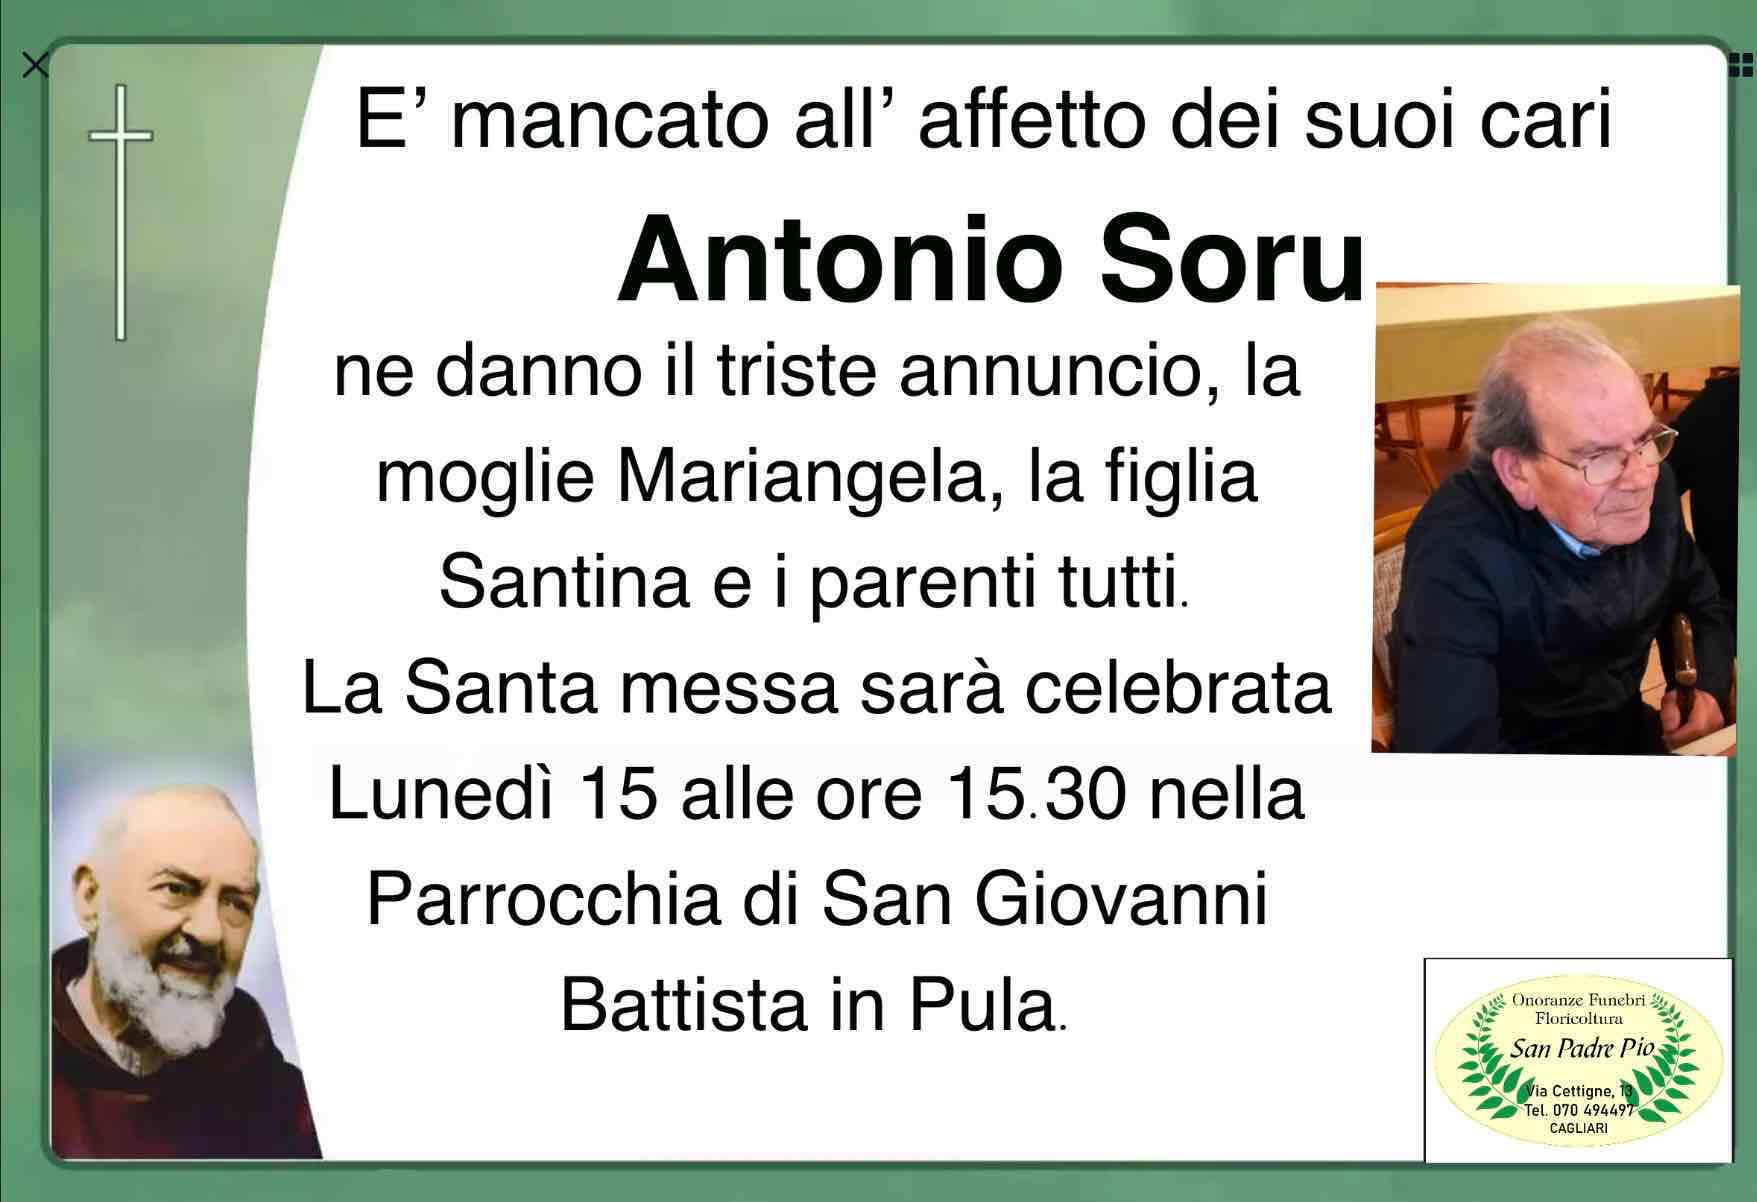 Antonio Soru